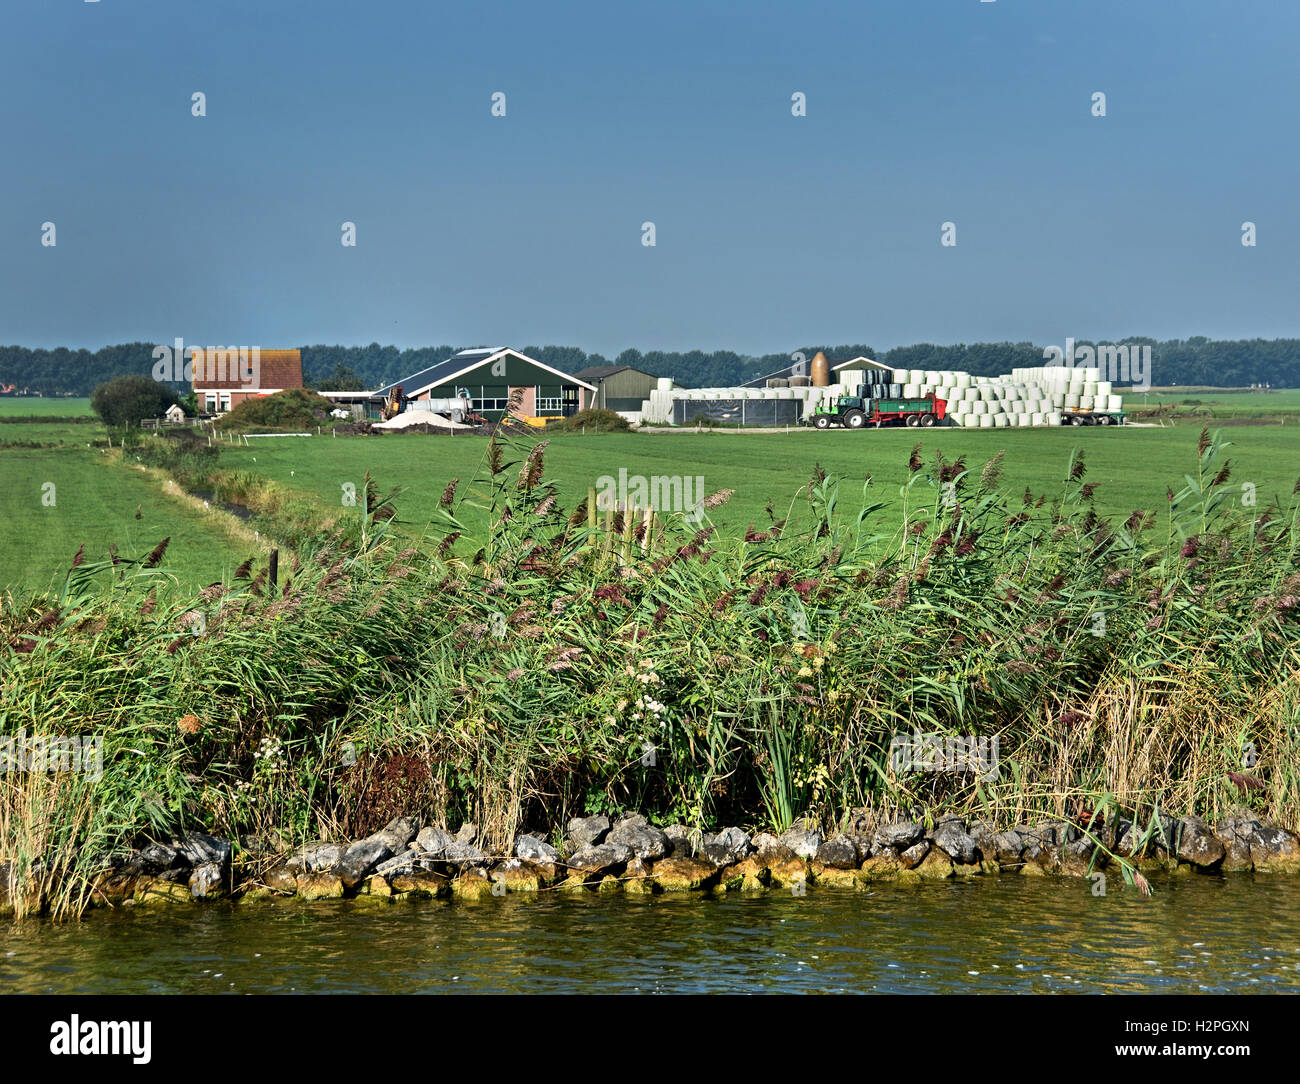 Ferme moderne de l'herbe verte de l'eau paysage agricole ferme frise Fryslan Pays-Bas Banque D'Images